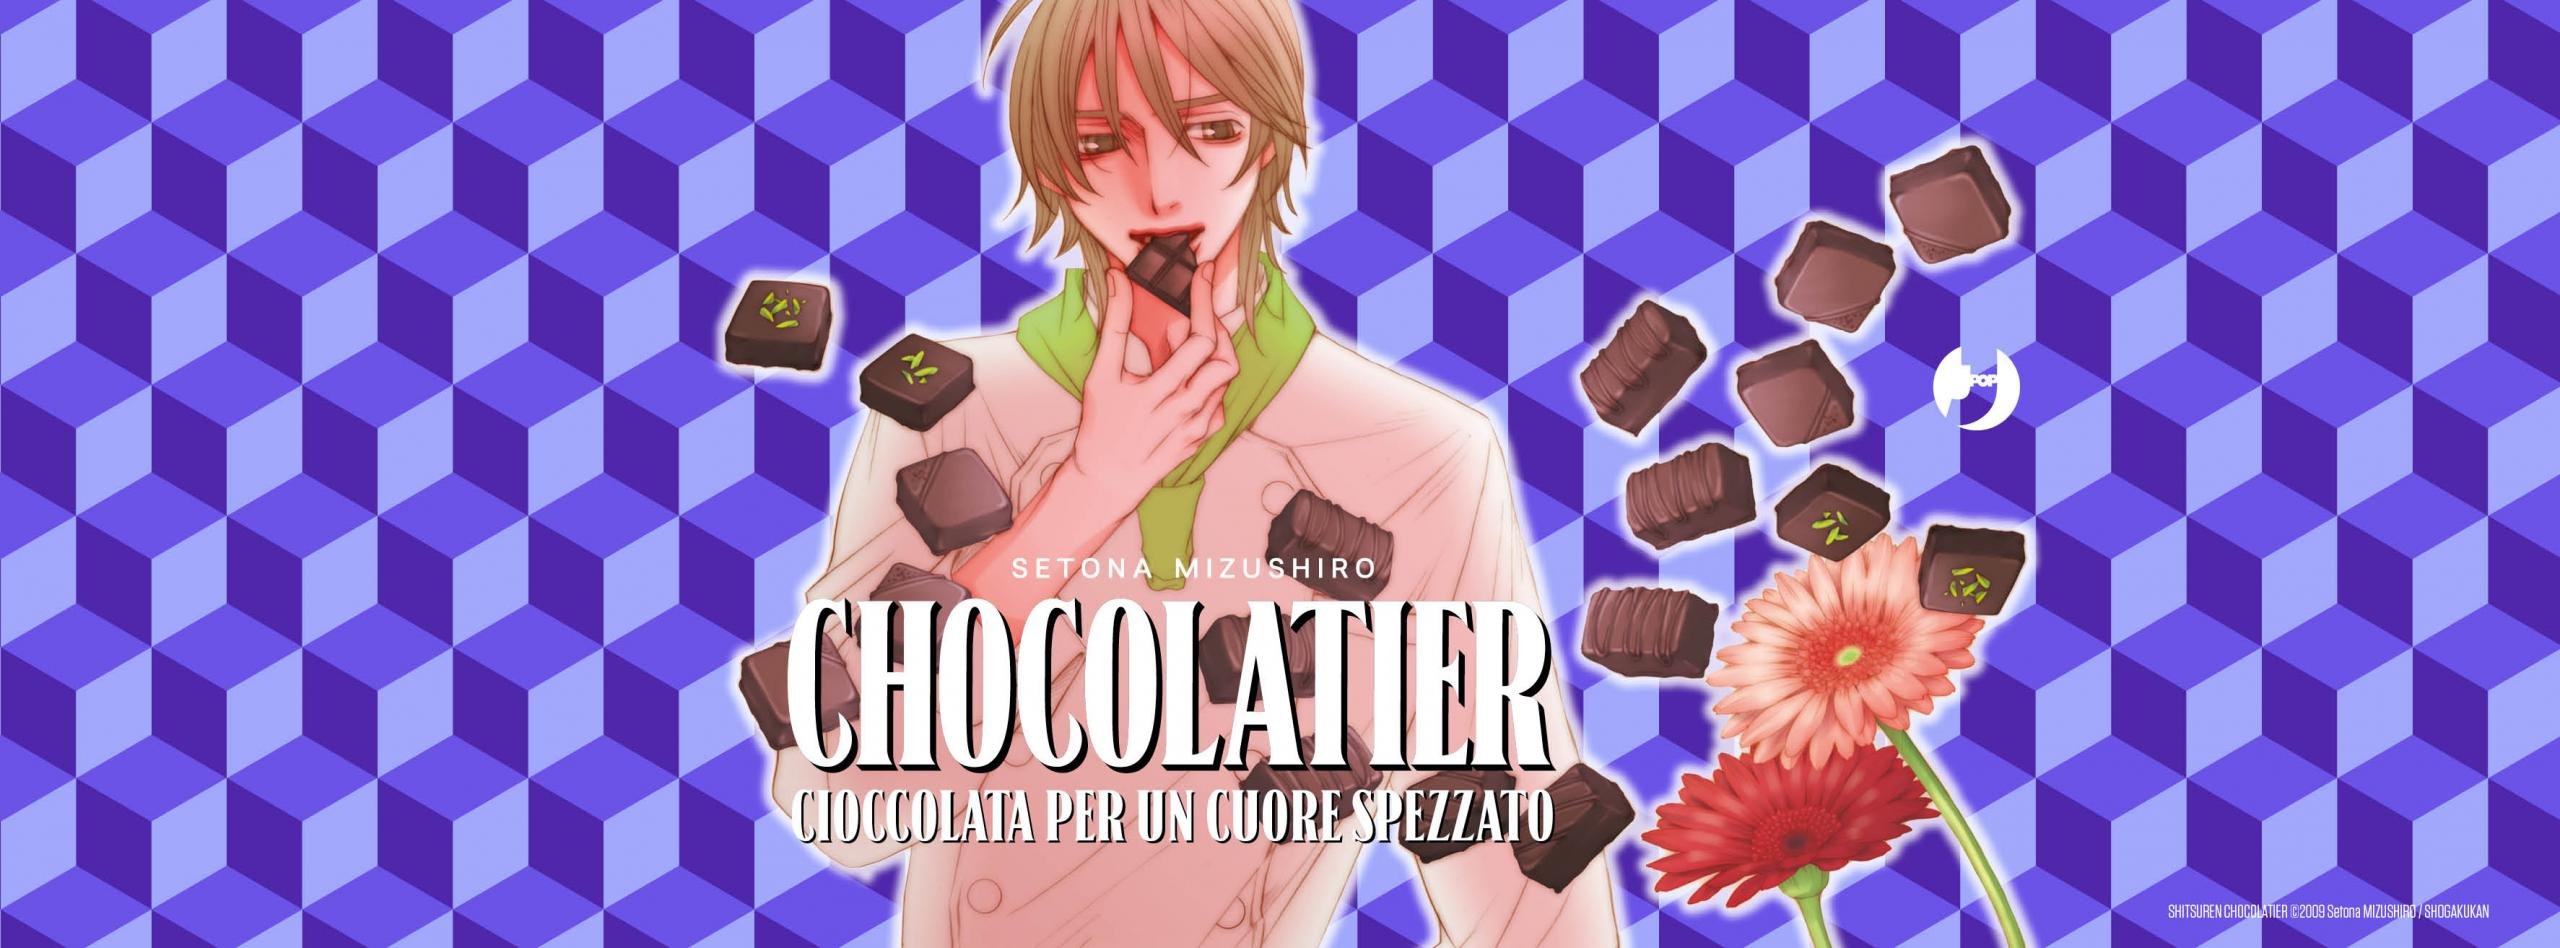 Chocolatier FB banner REV